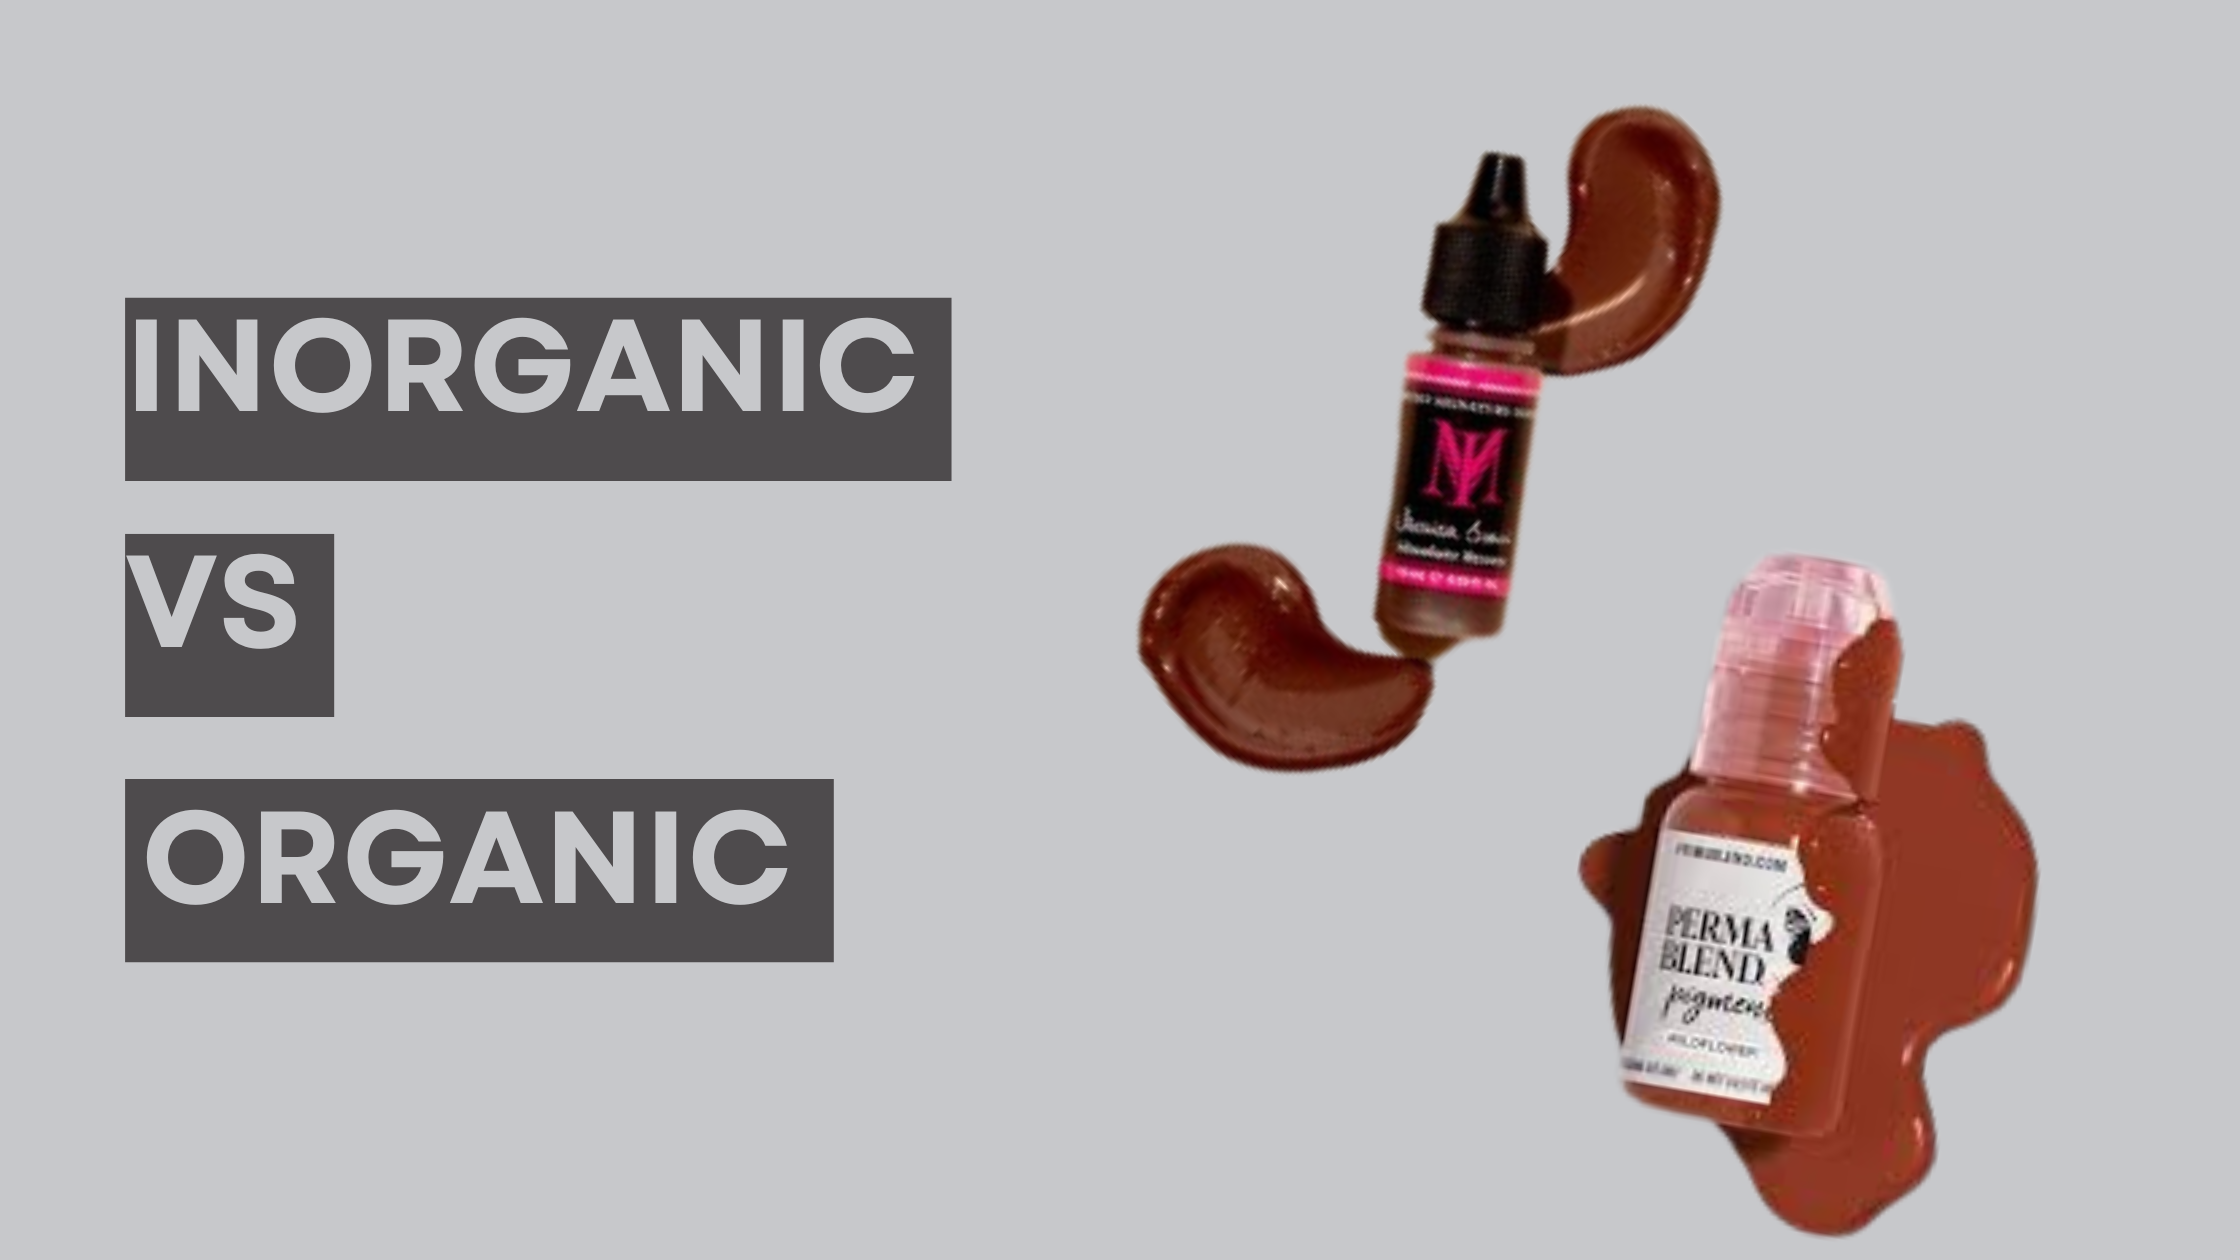 Inorganic vs organic pigments